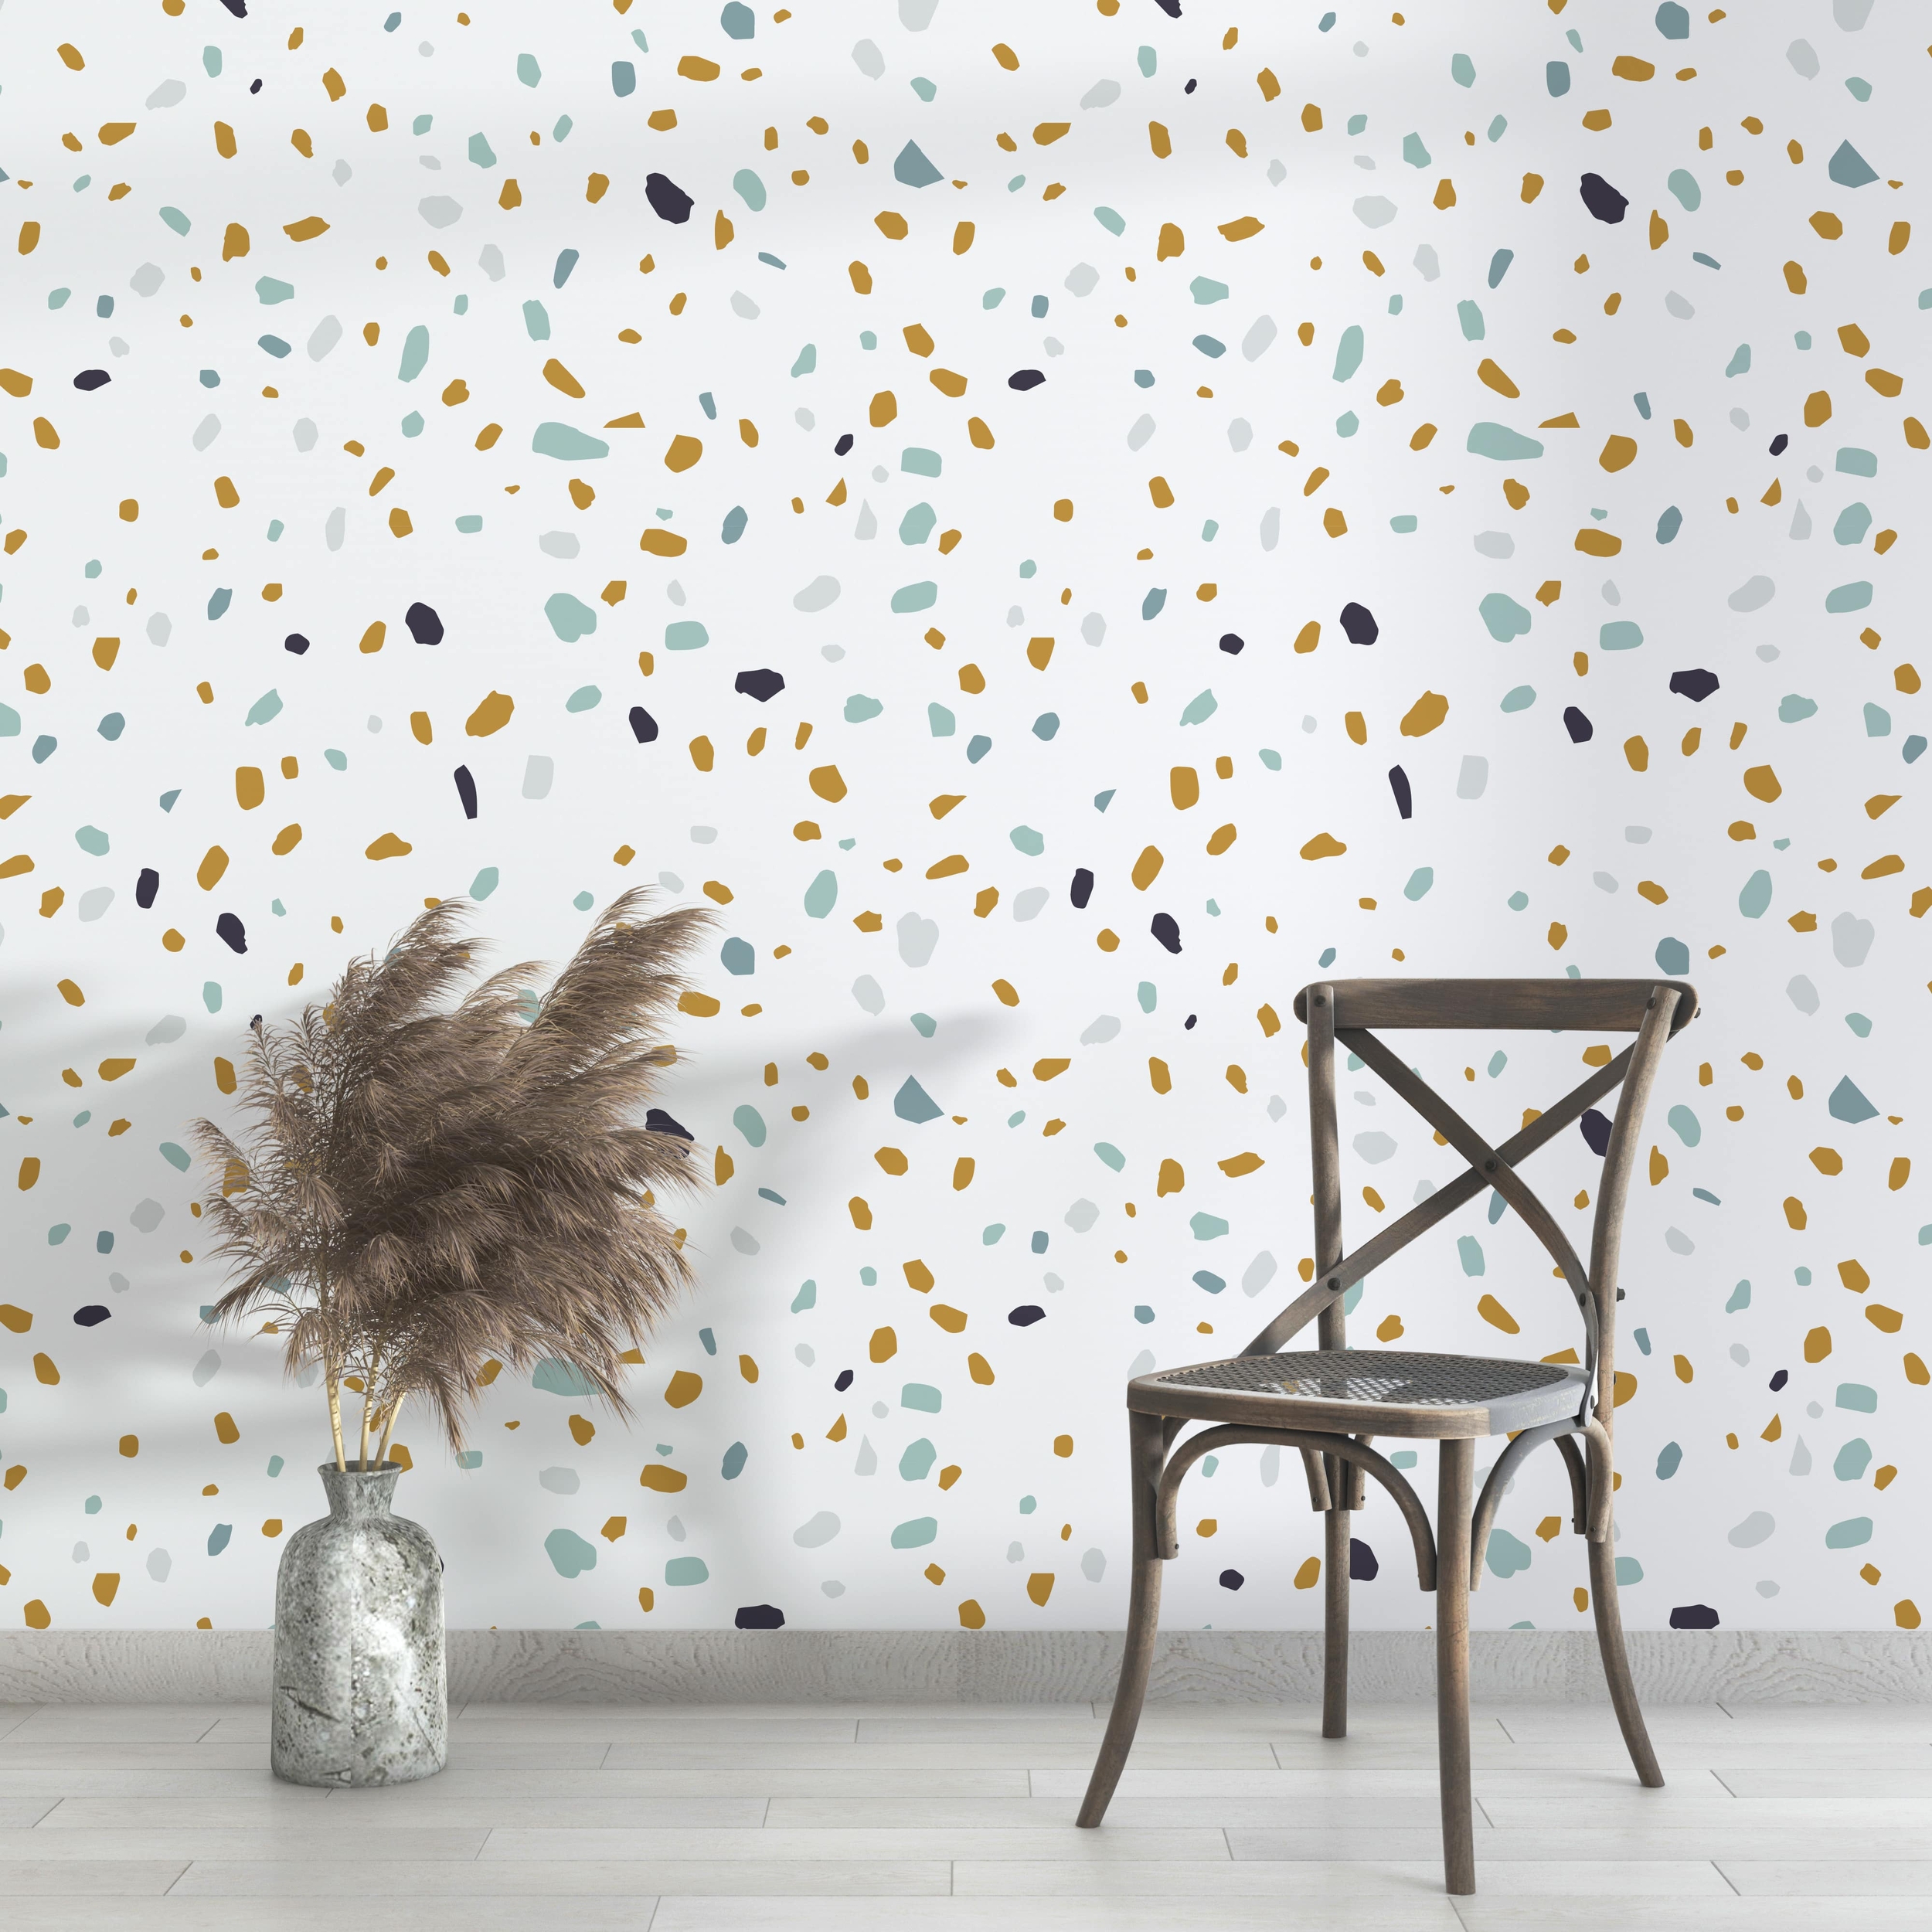 PP93-mur-papier-peint-adhesif-decoratif-revetement-vinyle-motifs-brisure-bleu-jaune-renovation-meuble-mur-min